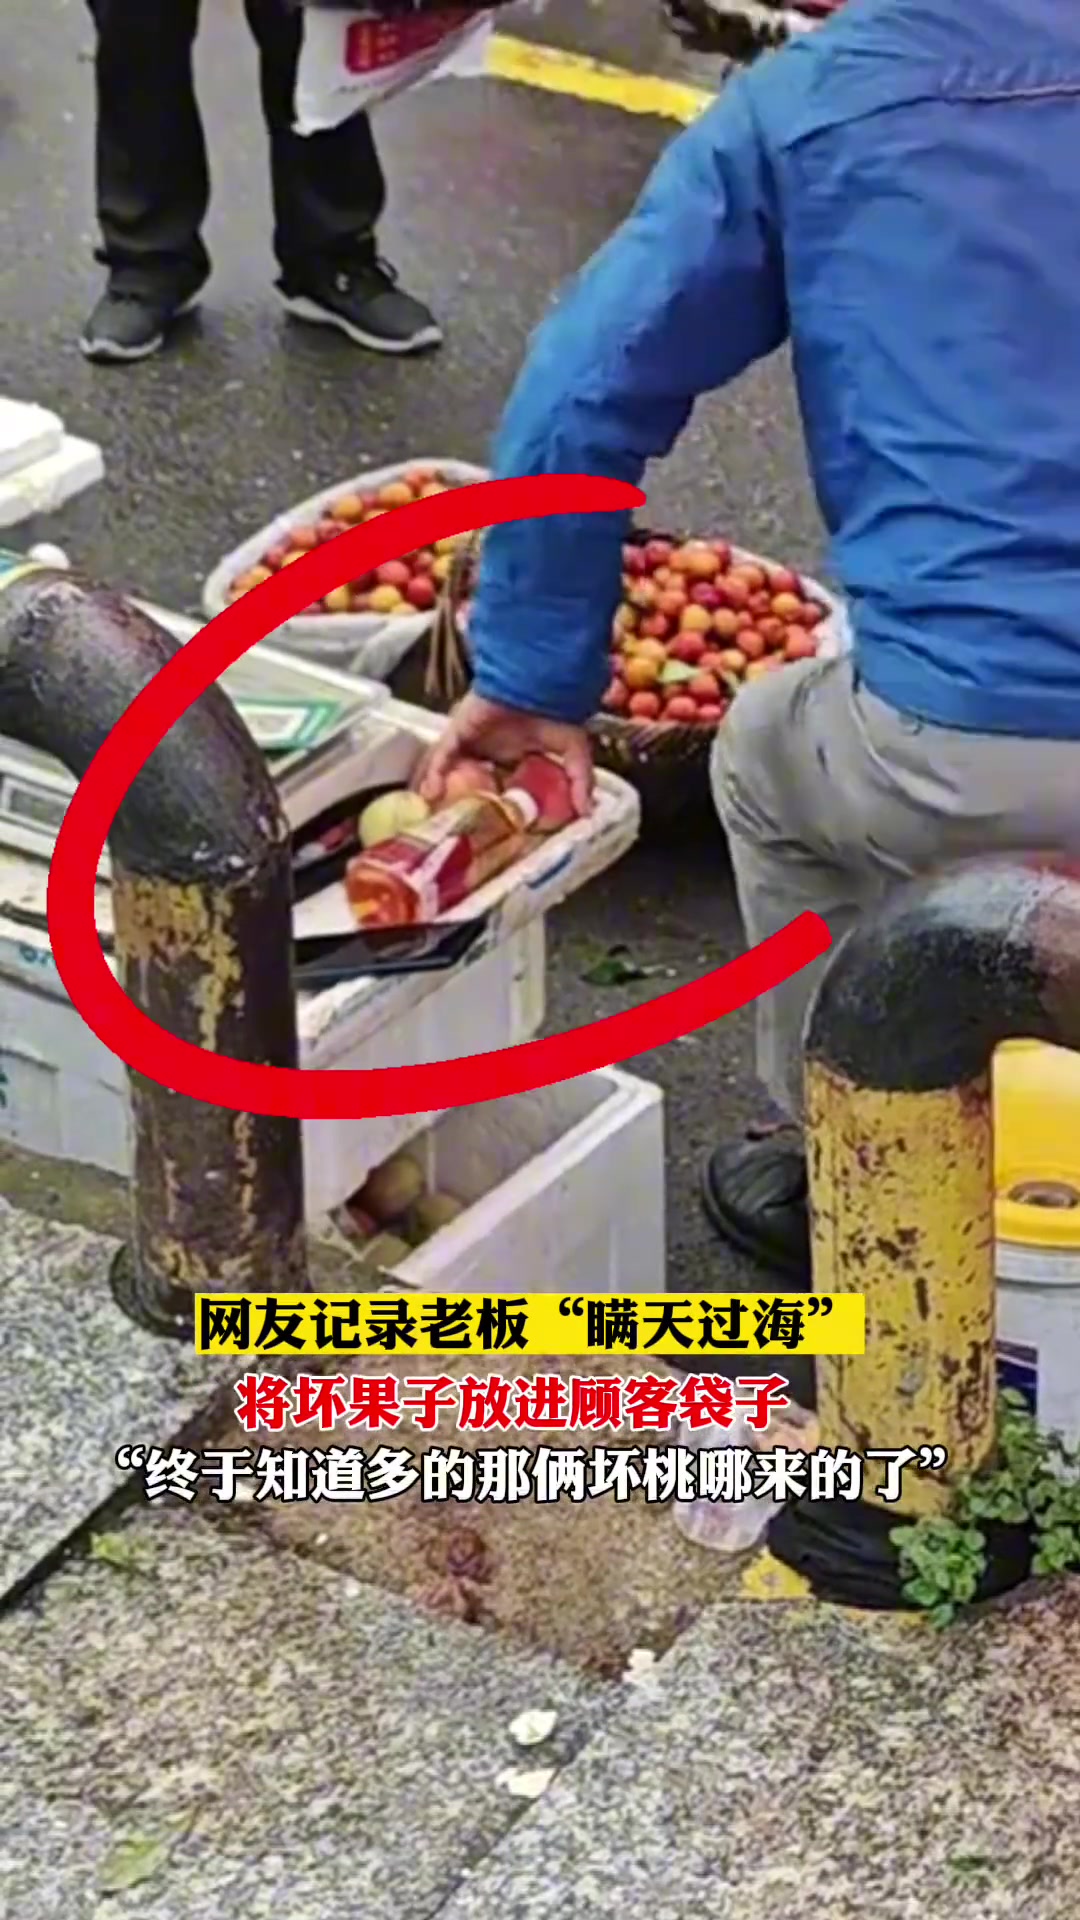 水果摊老板瞒天过海 趁顾客不备将坏果子放进袋子里称